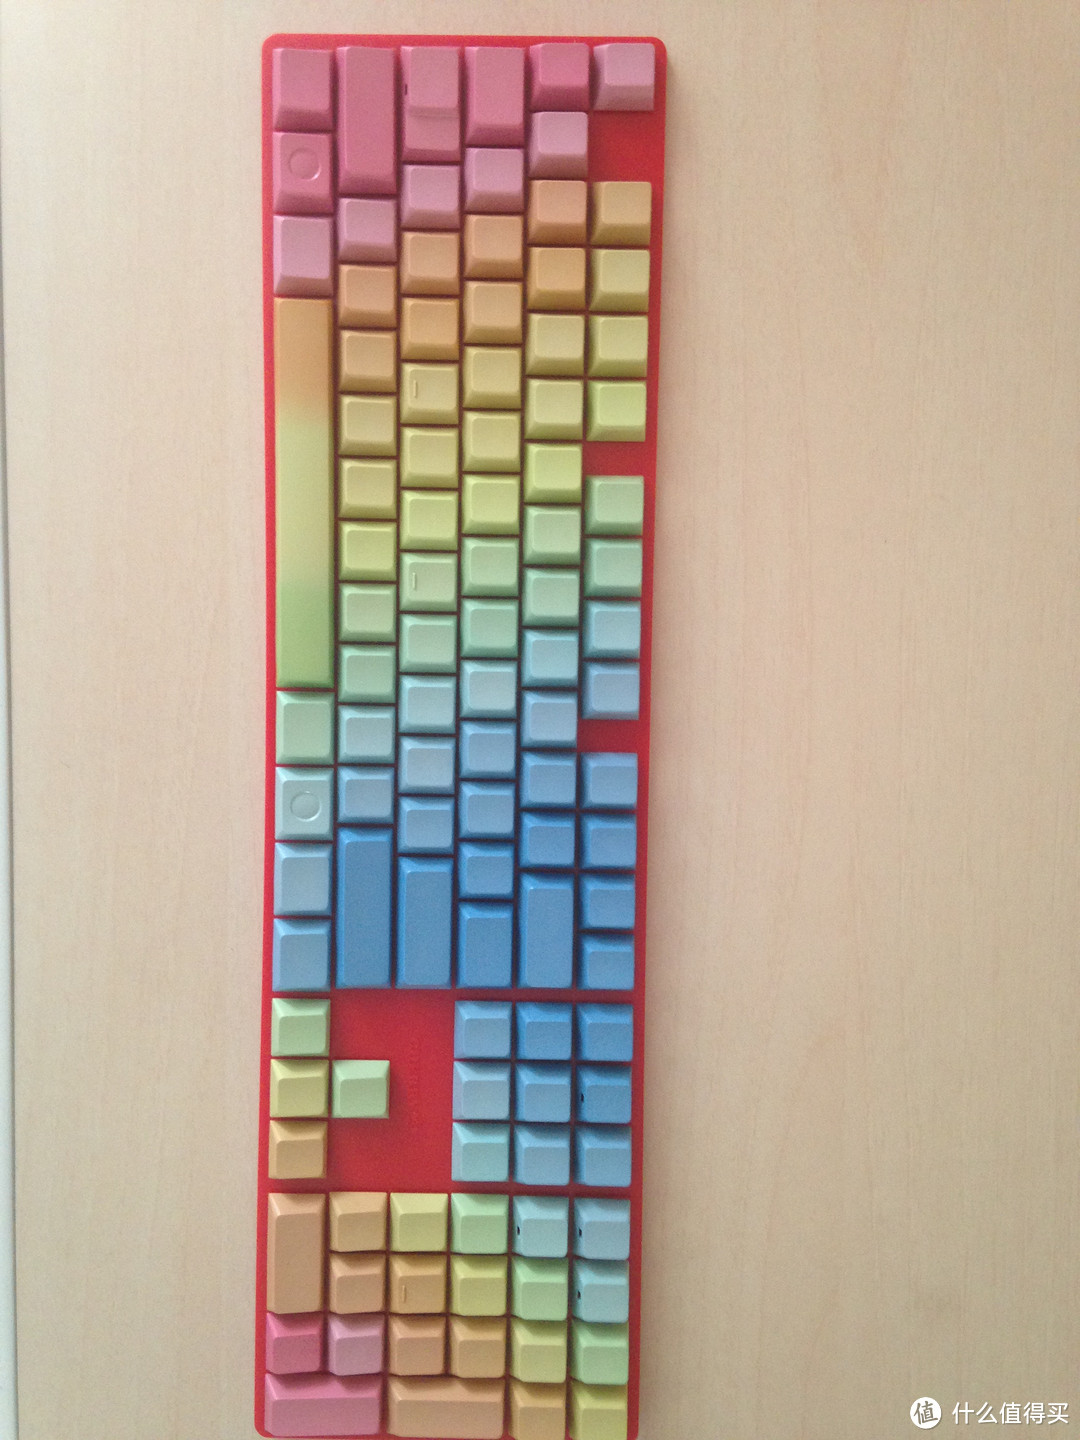 使用非标志键盘的悲哀与樱桃彩虹键帽的搭配